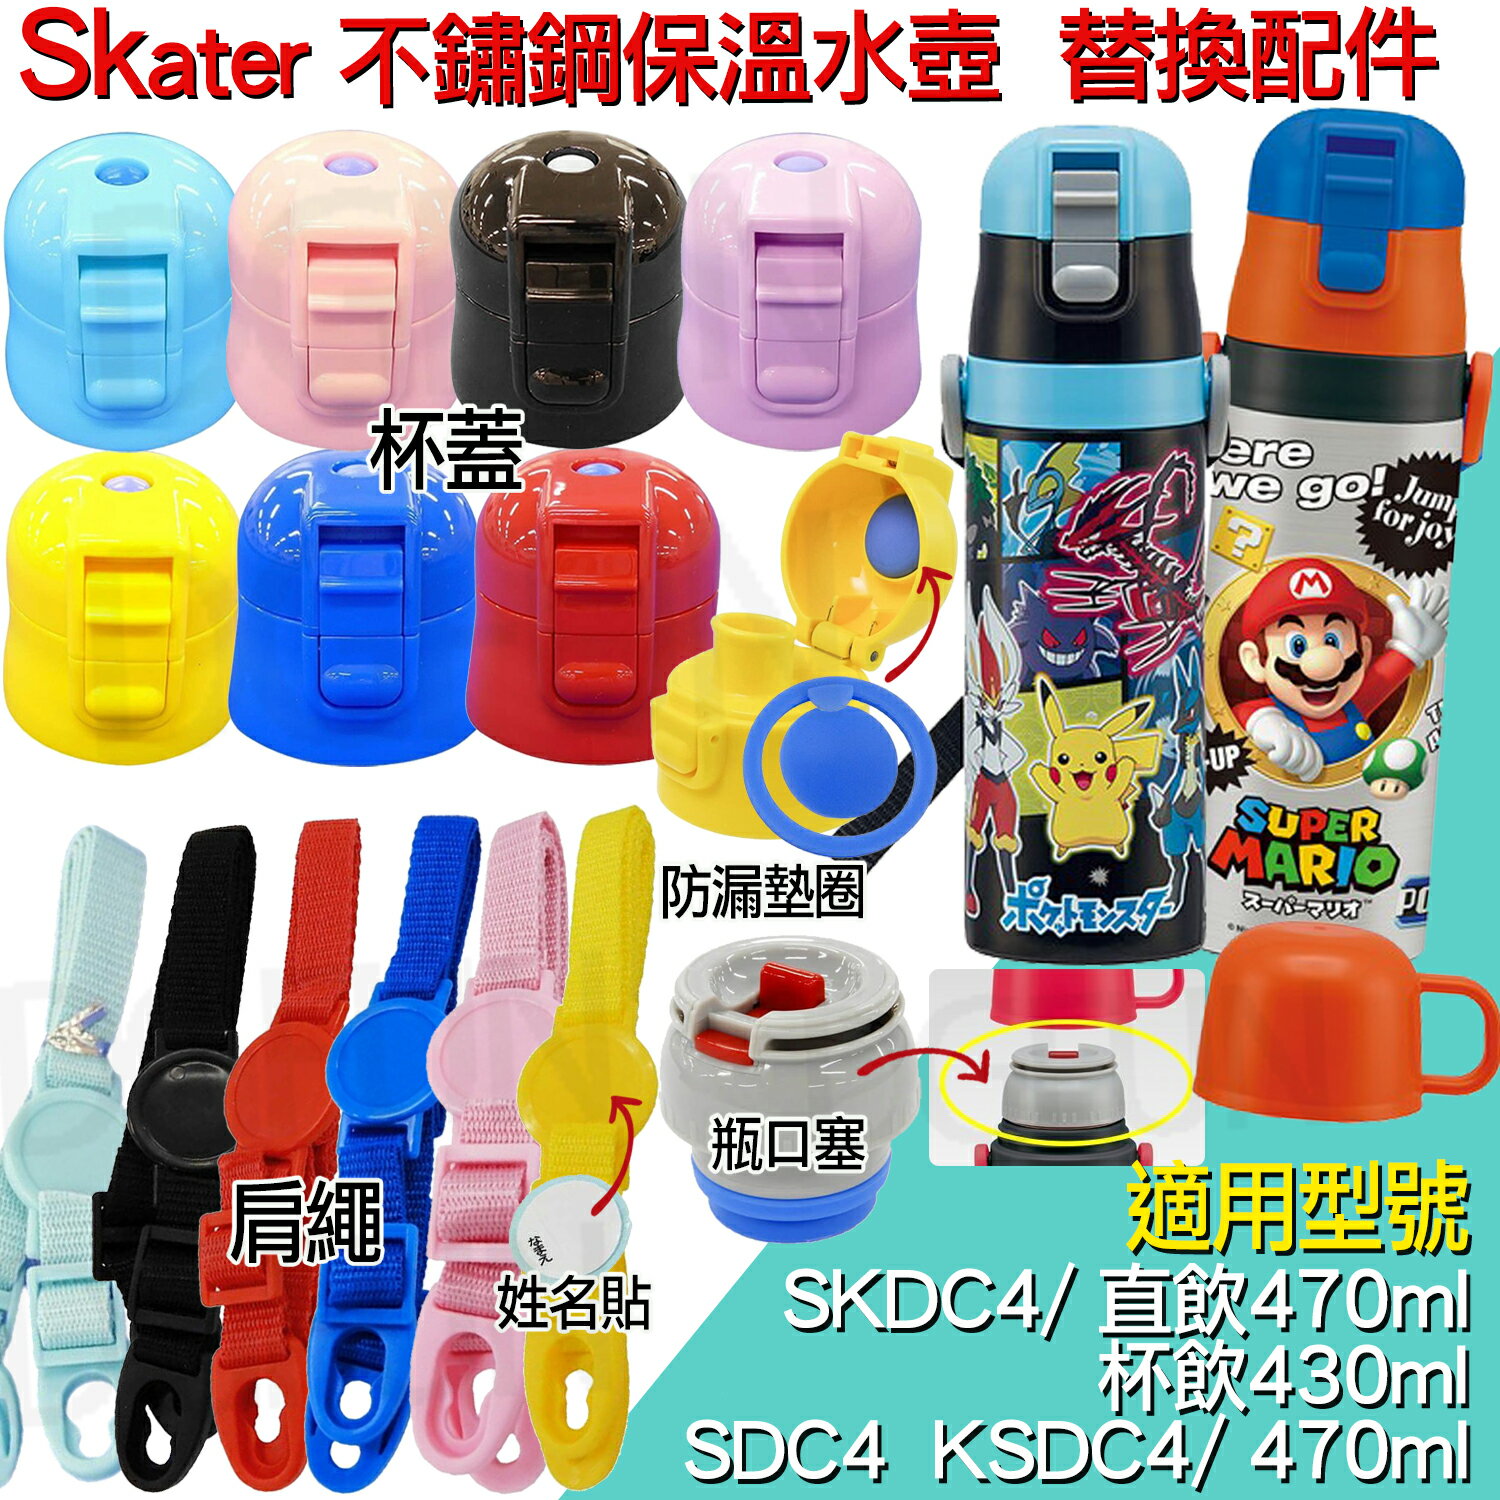 大賀屋 日貨 Skater 保溫水壺 背帶 瓶蓋 防漏條 水瓶栓 上蓋 配件 不銹鋼水壺 SDC4 SKDC4 S16